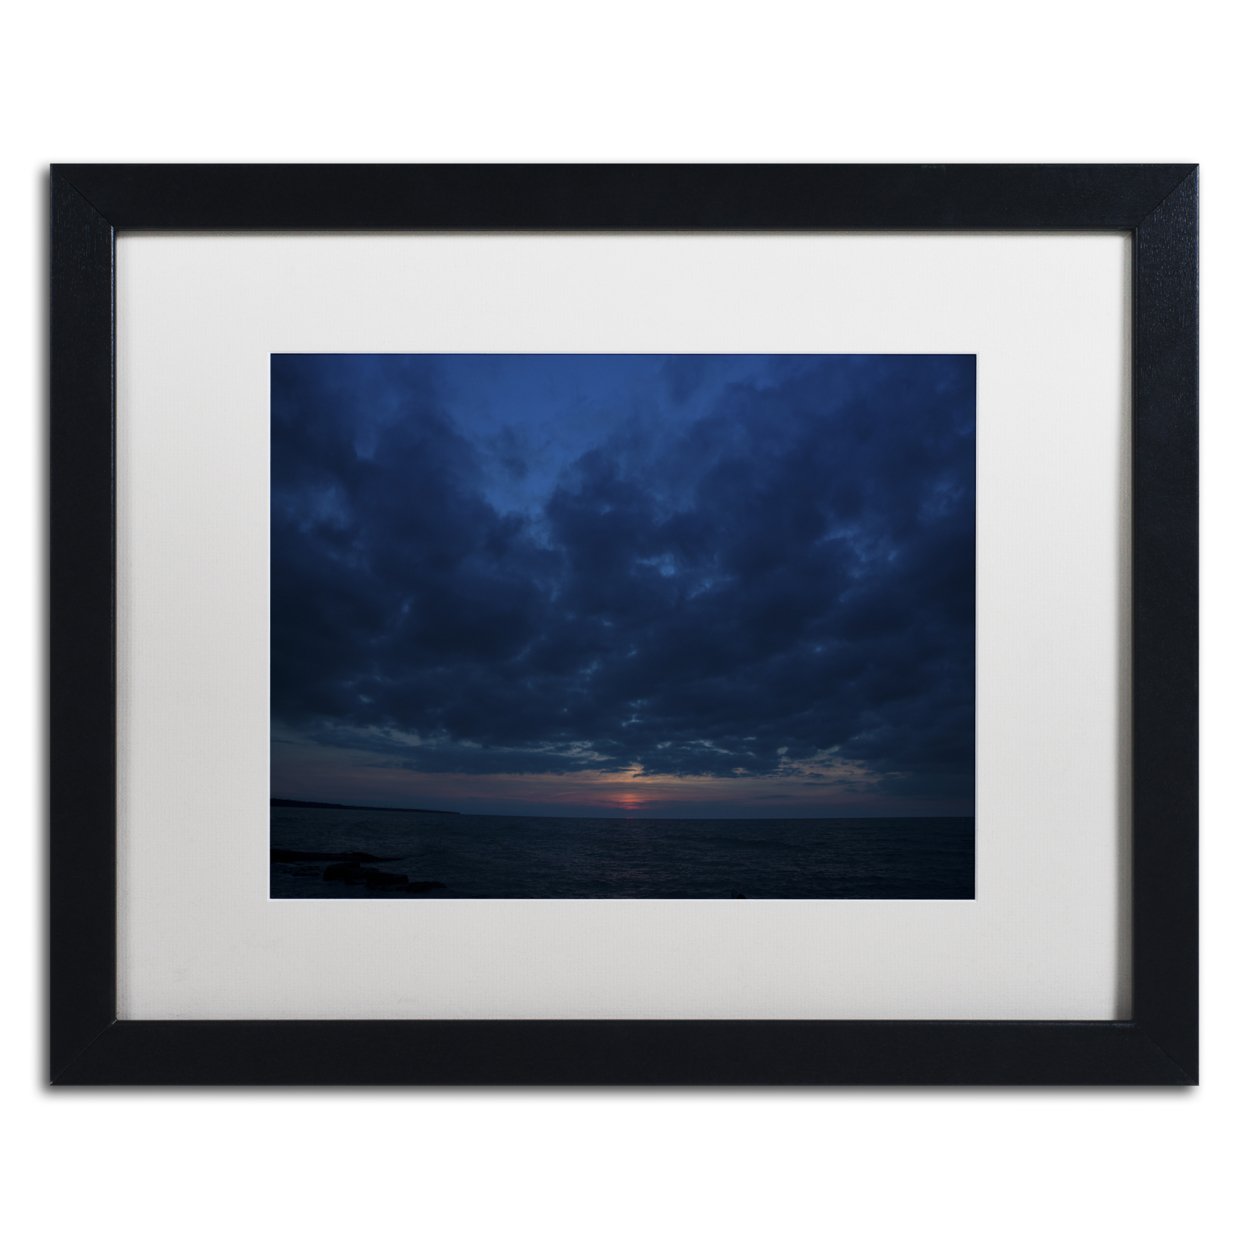 Kurt Shaffer 'Contemplative Sunset' Black Wooden Framed Art 18 X 22 Inches